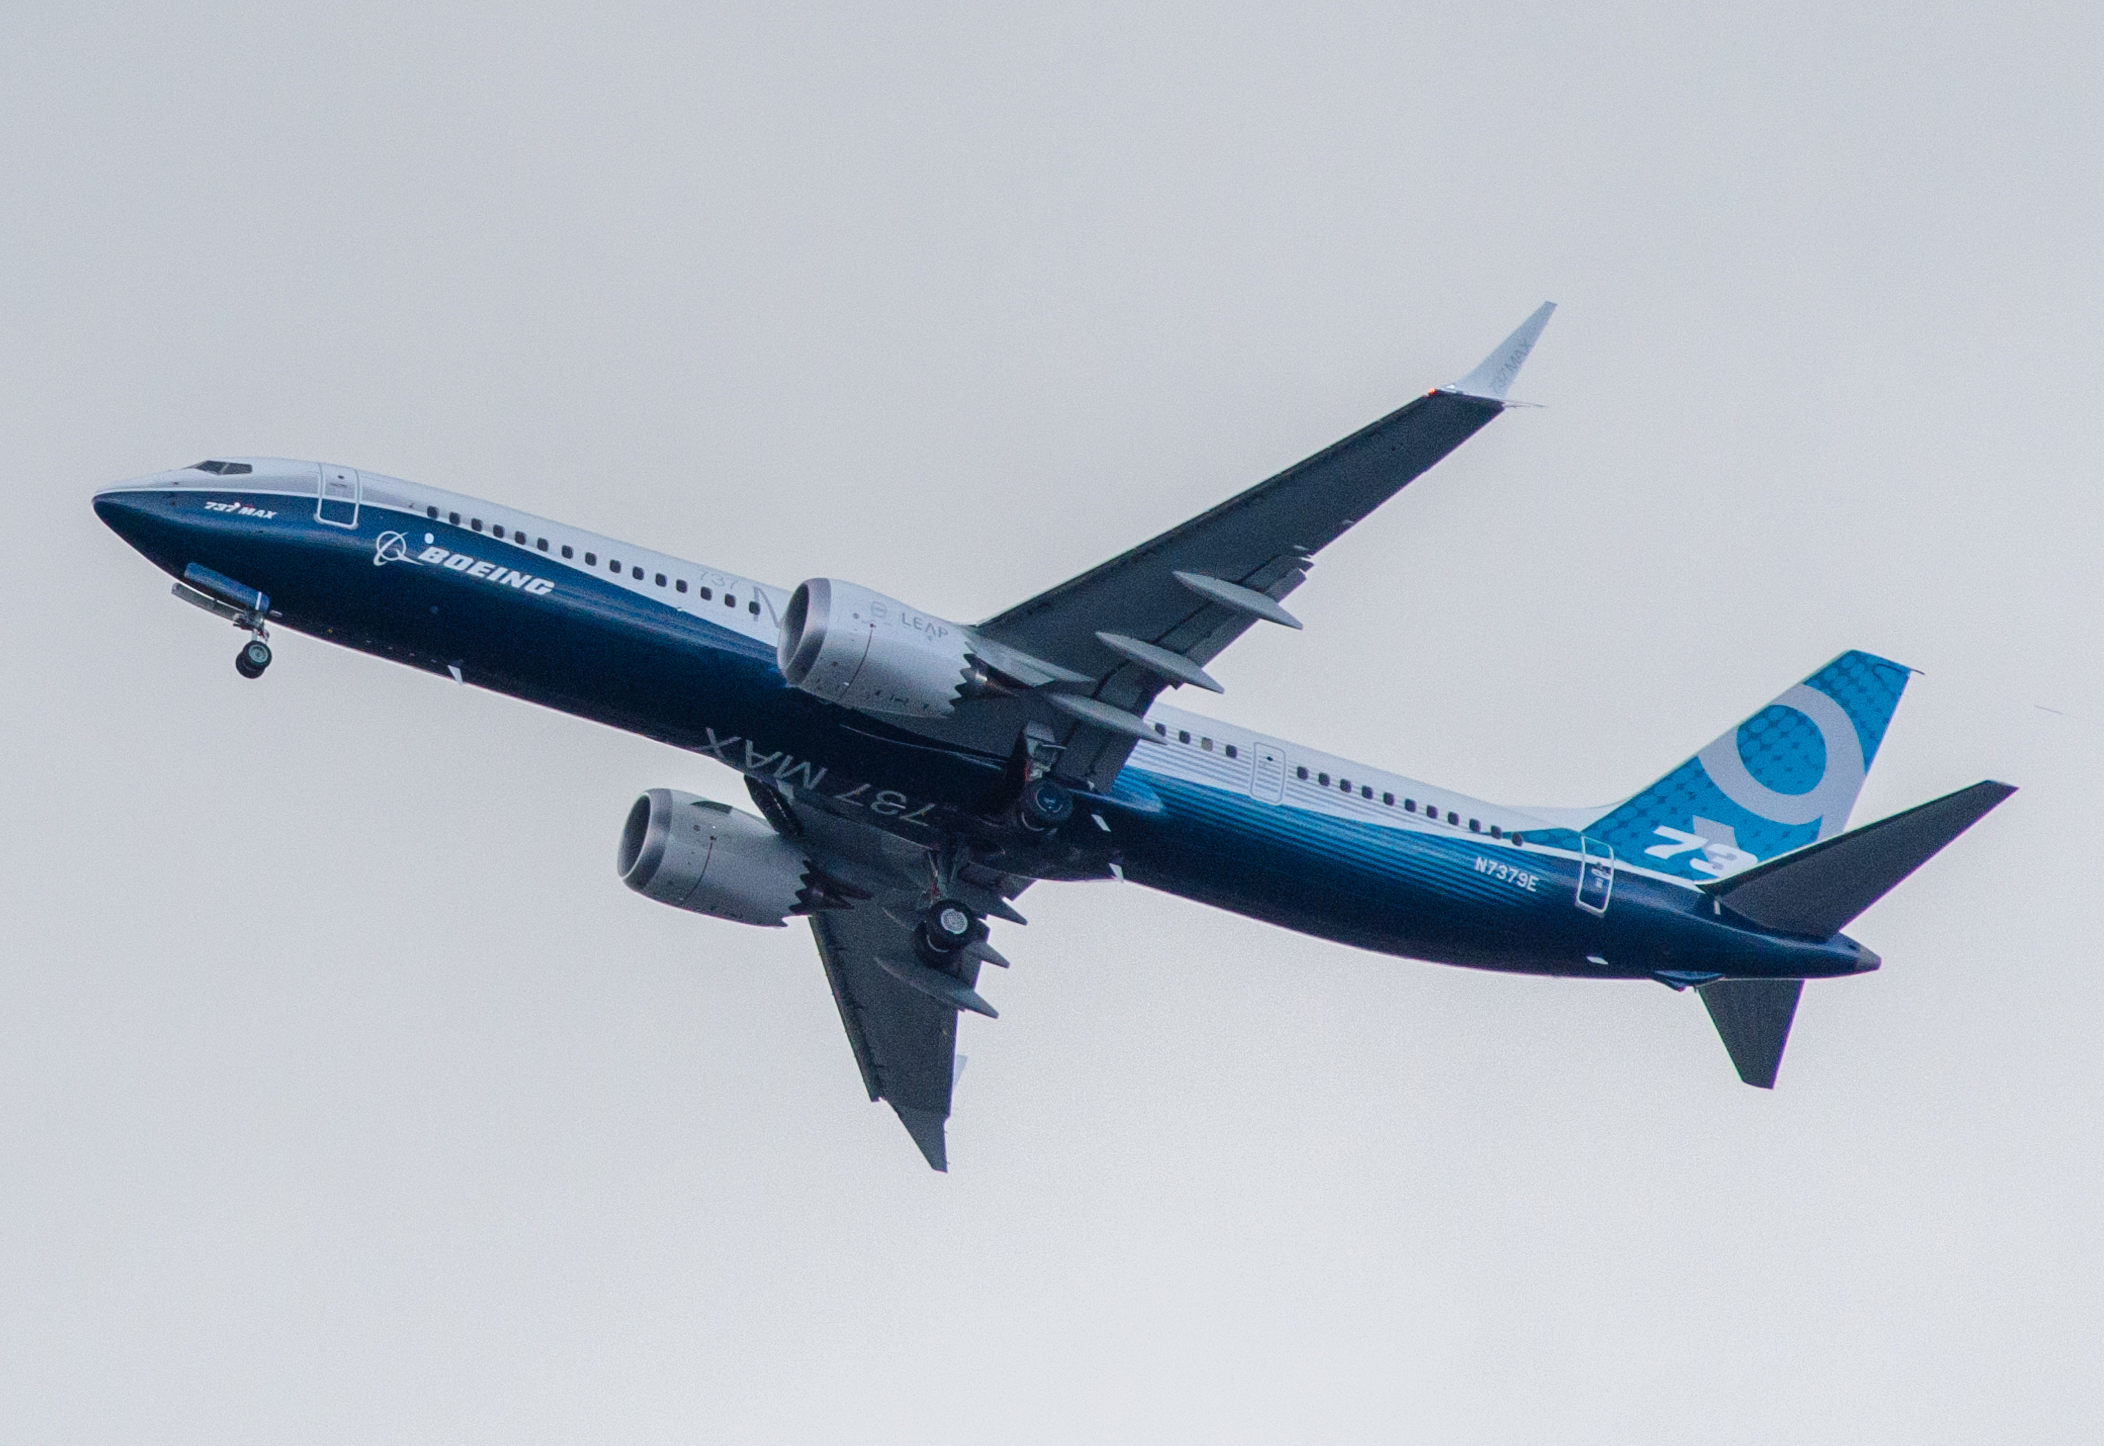 UPDATE 4-Boeing profit slumps 53% as MAX crisis deepens